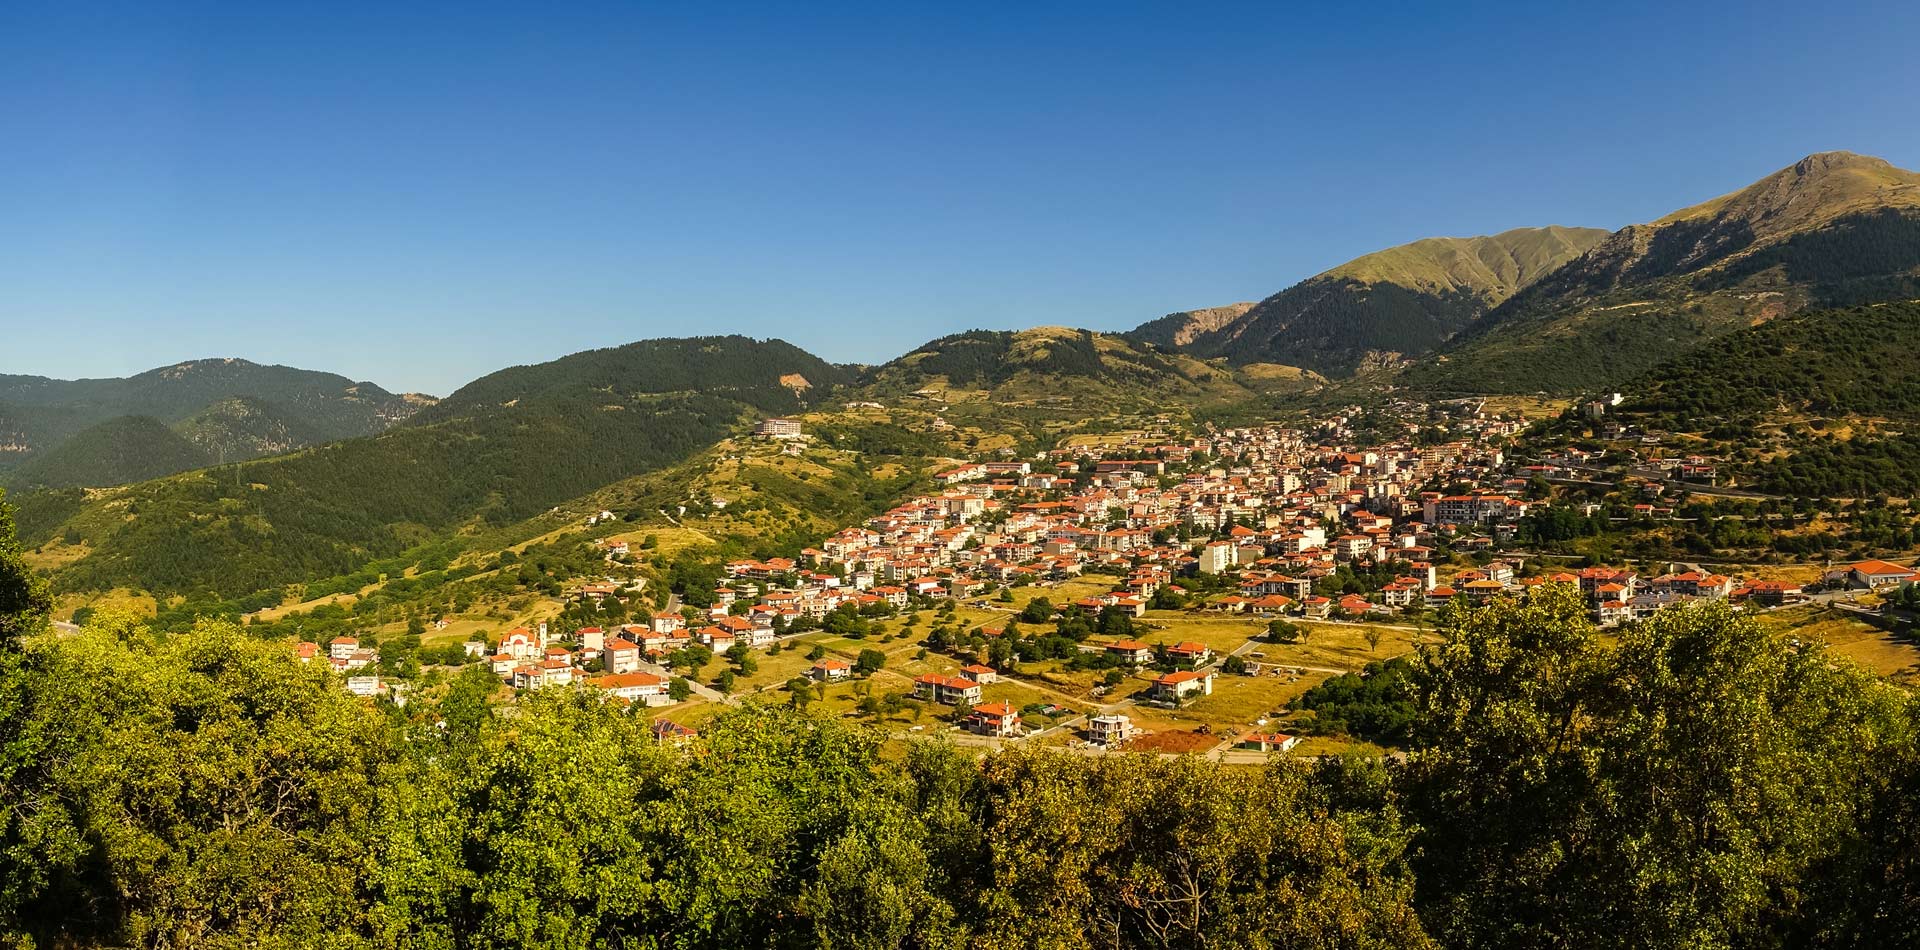 Πανοραμική θέα ενός χωριού στα βουνά.